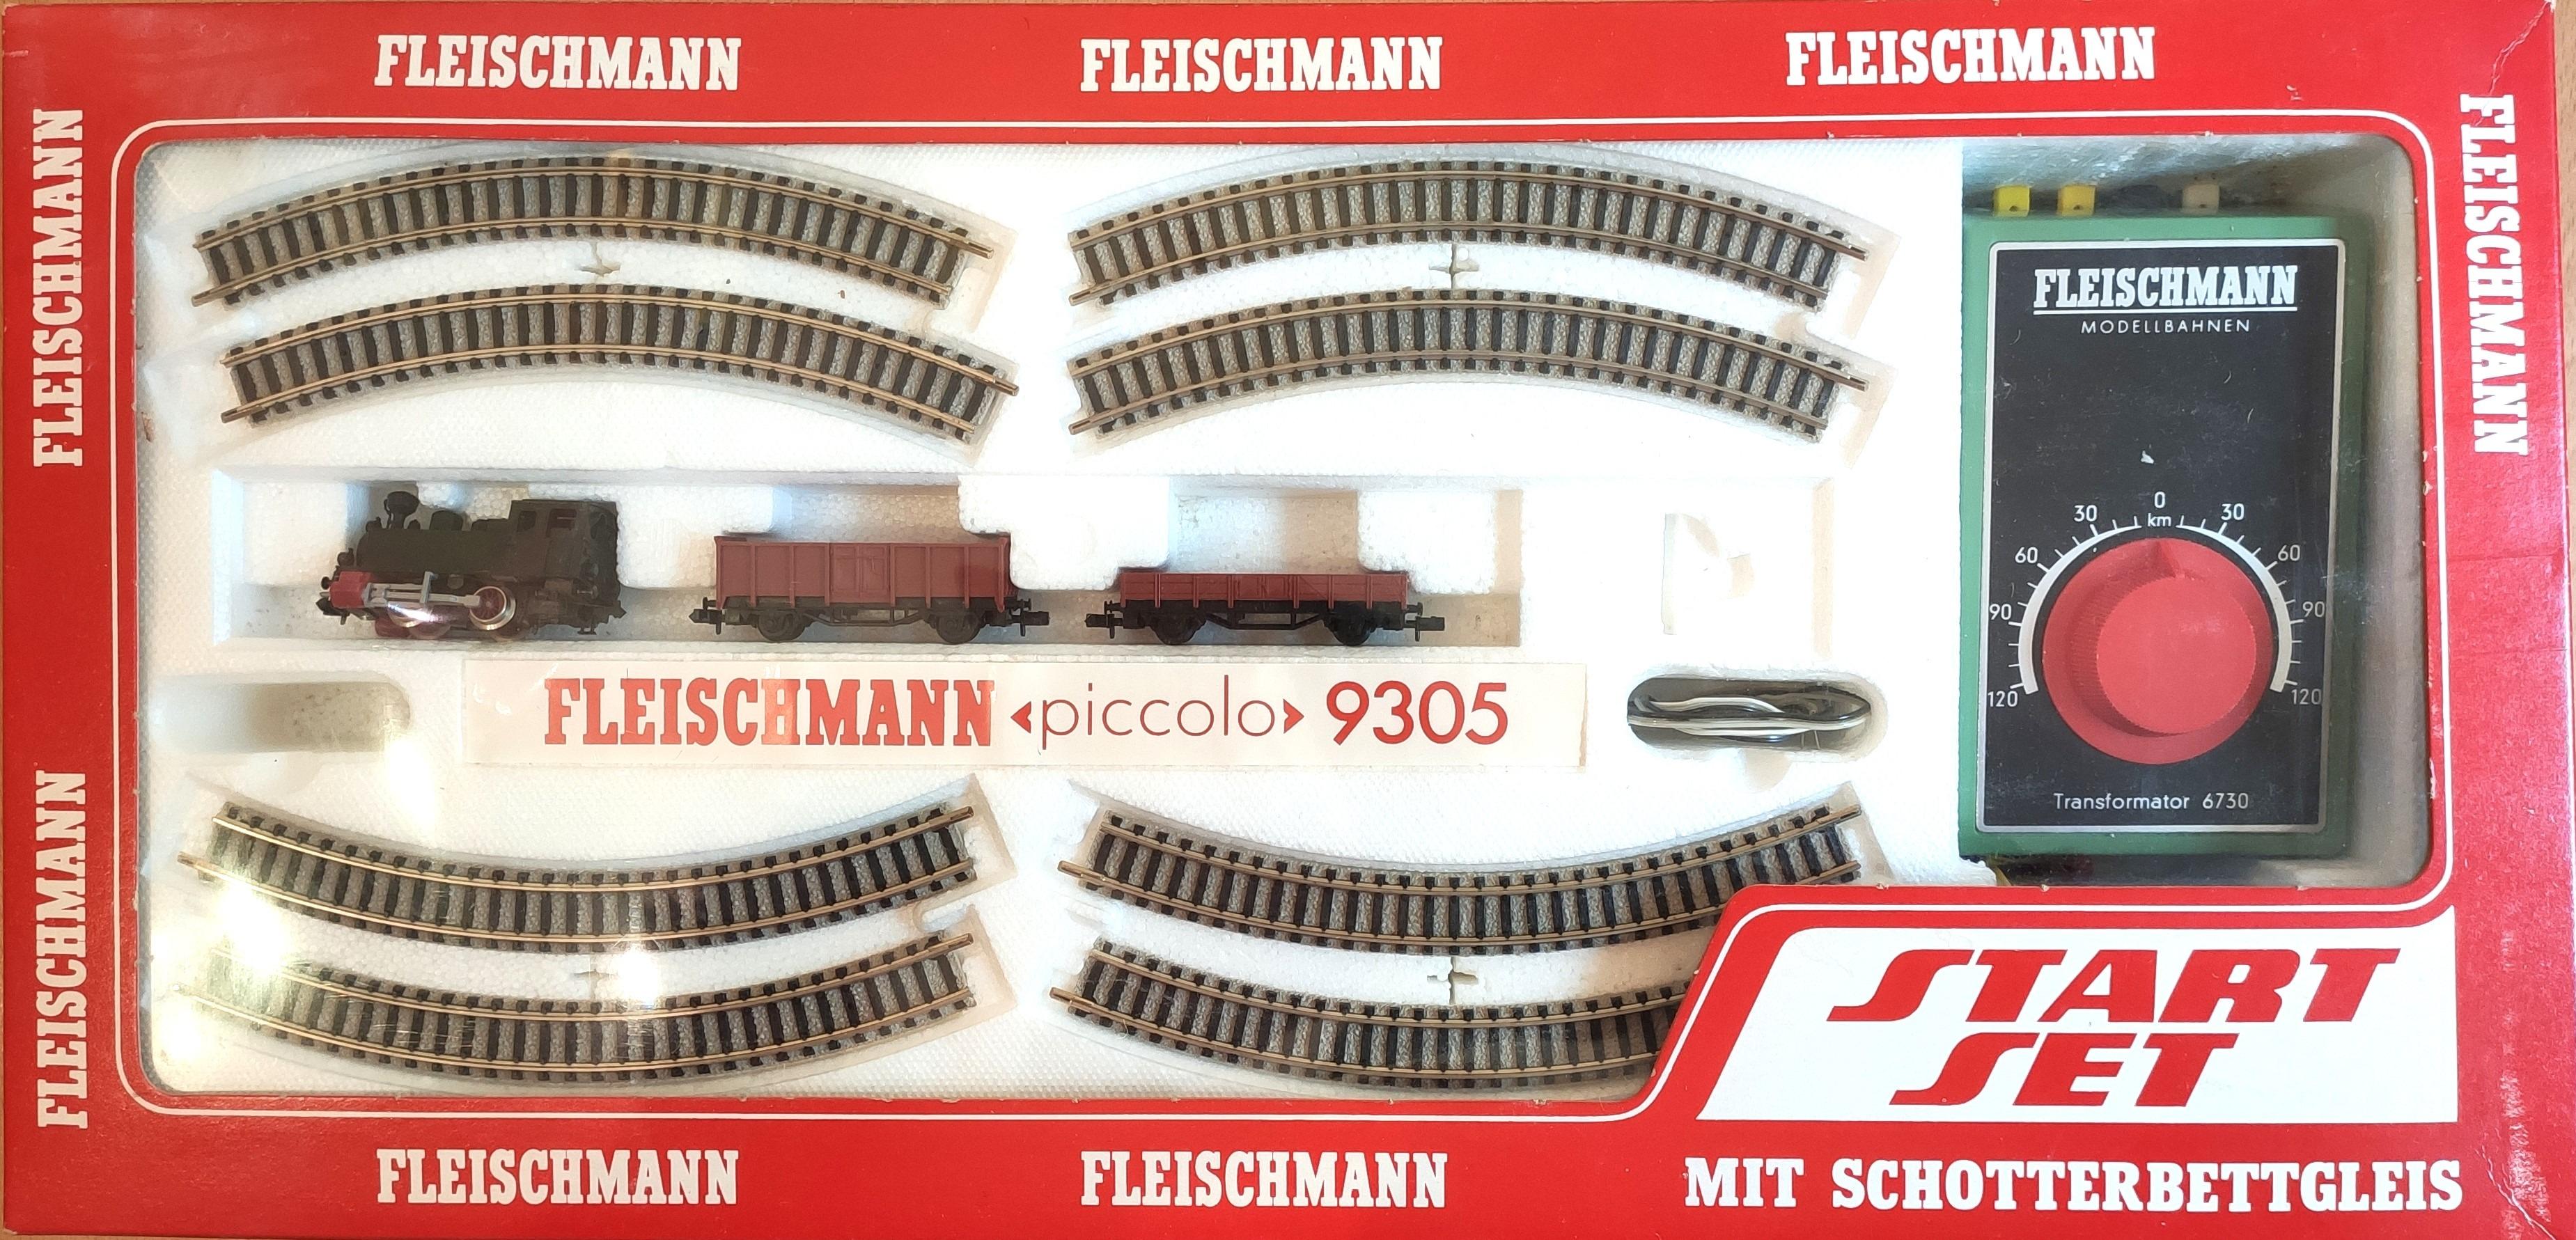 FLEISCHMANN „piccolo“ Spur N 9305 STARTSET in 90419 Nürnberg für